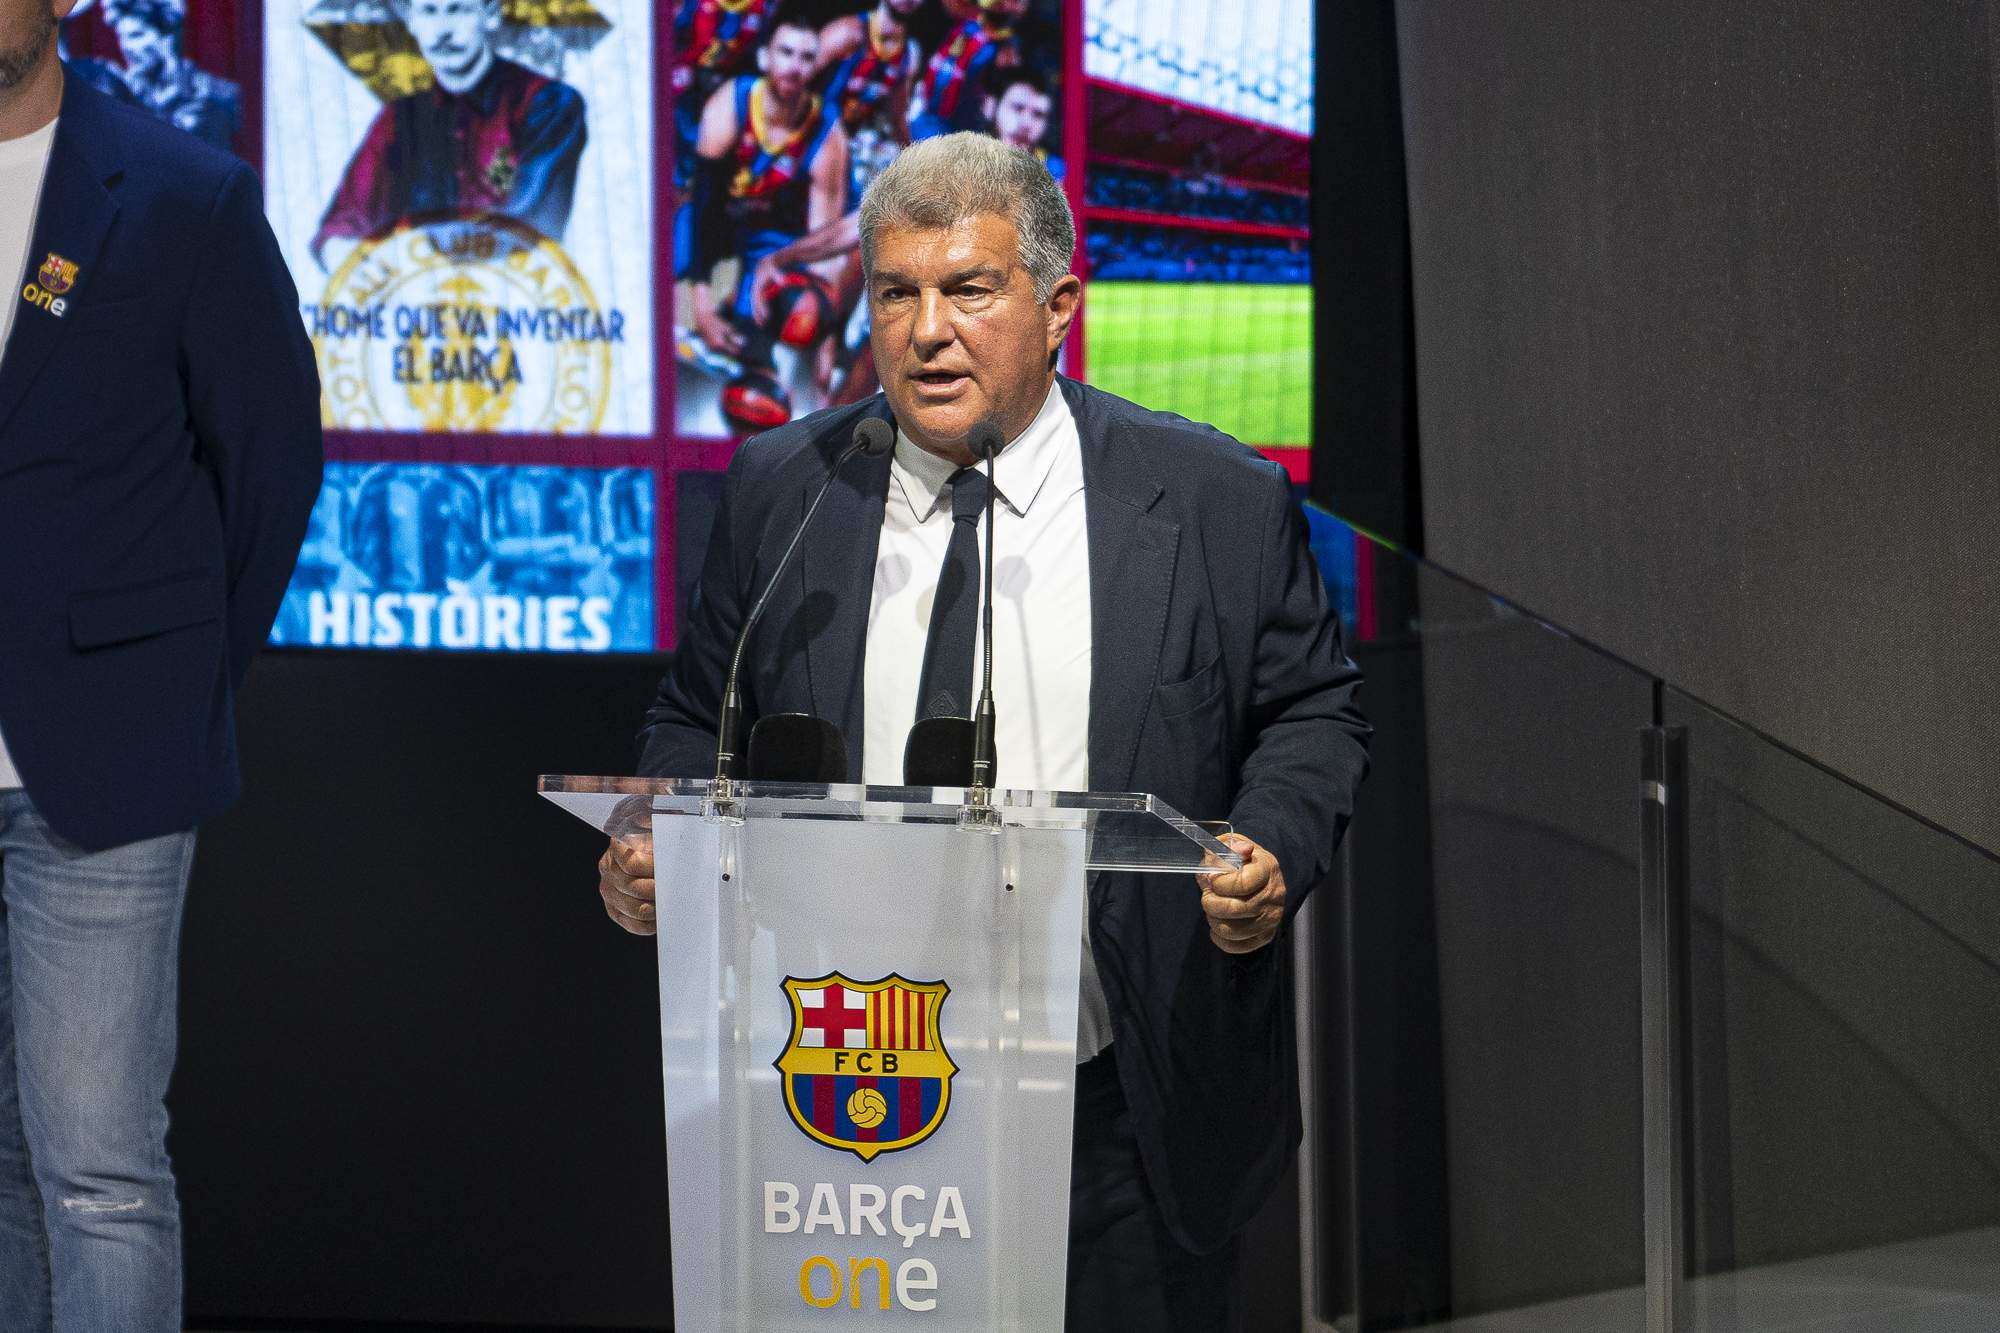 Oficial, de besar l'escut del Barça a deixar plantat Joan Laporta i firmar pel Reial Madrid